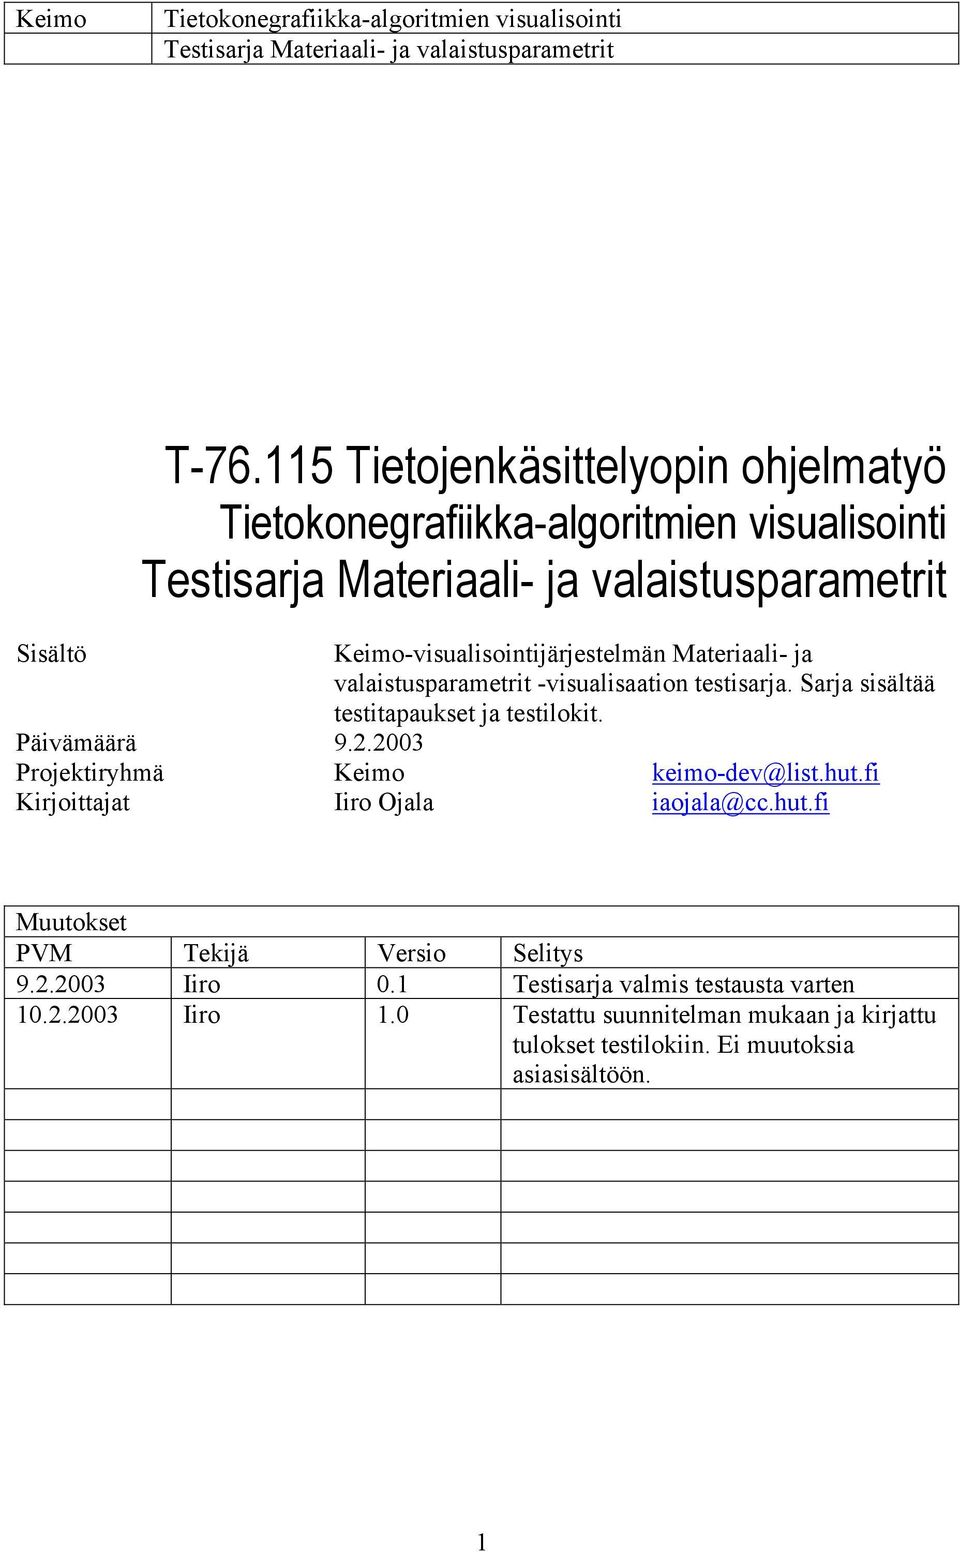 2003 Projektiryhmä Keimo keimo-dev@list.hut.fi Kirjoittajat Iiro Ojala iaojala@cc.hut.fi Muutokset PVM Tekijä Versio Selitys 9.